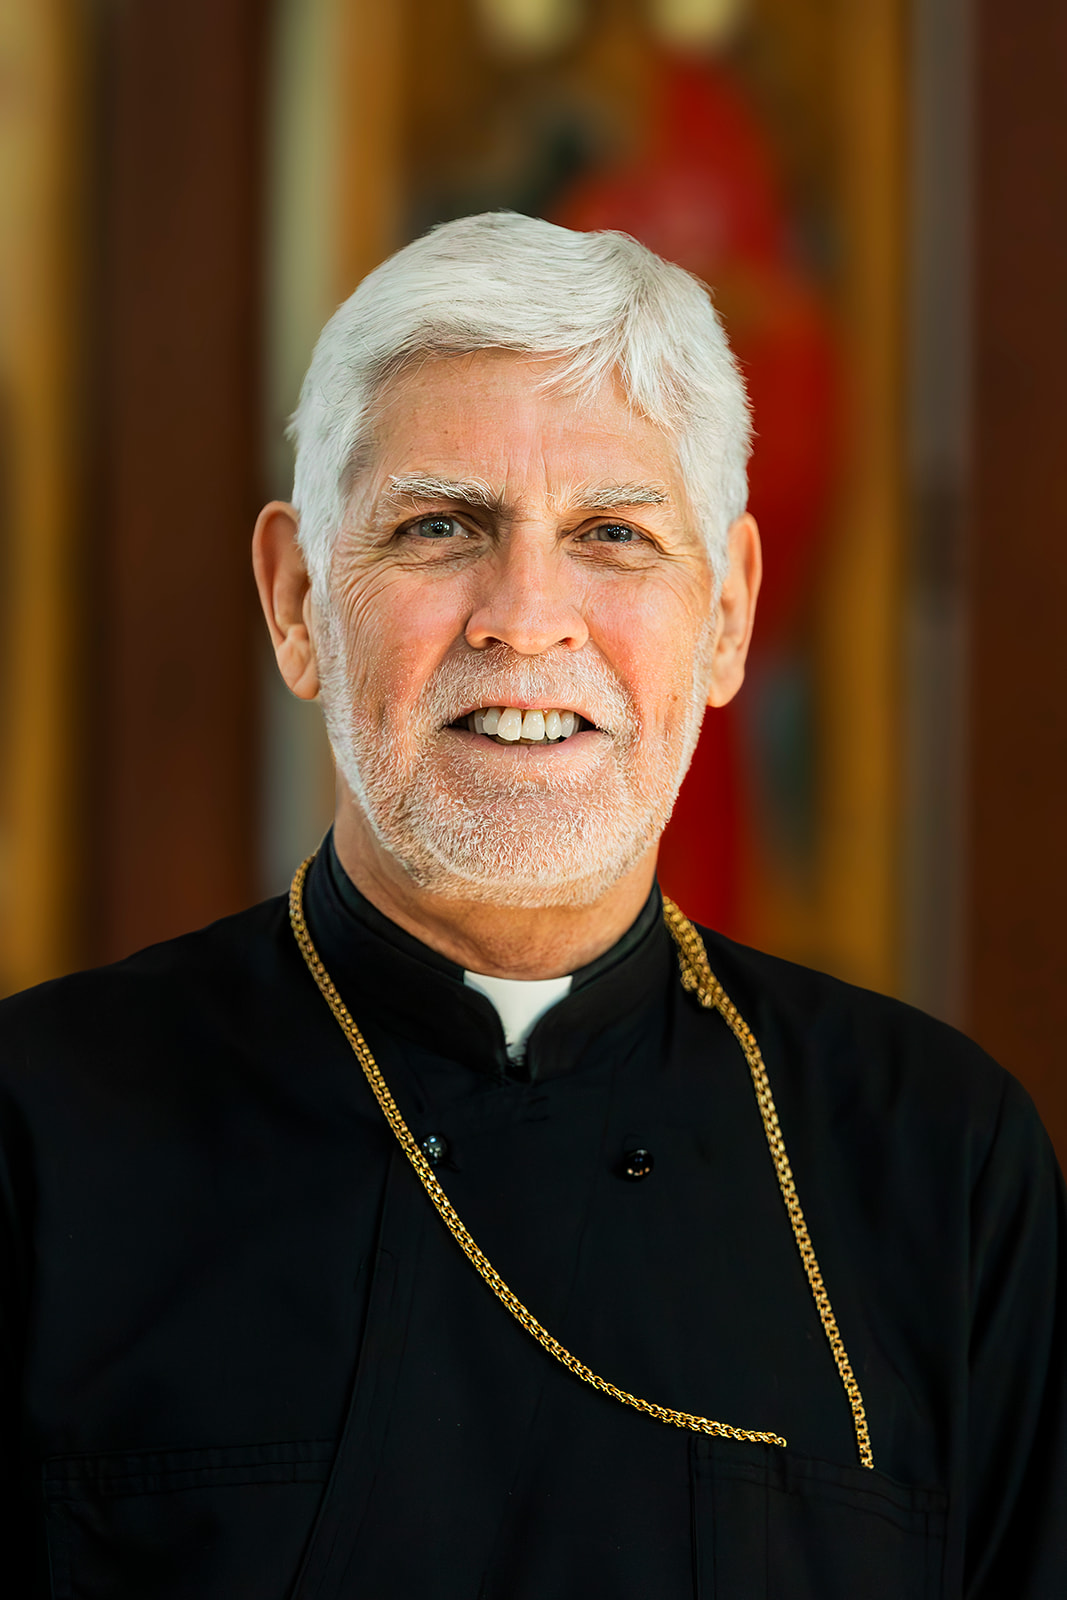 V. Rev. Fr. Robert Sanford